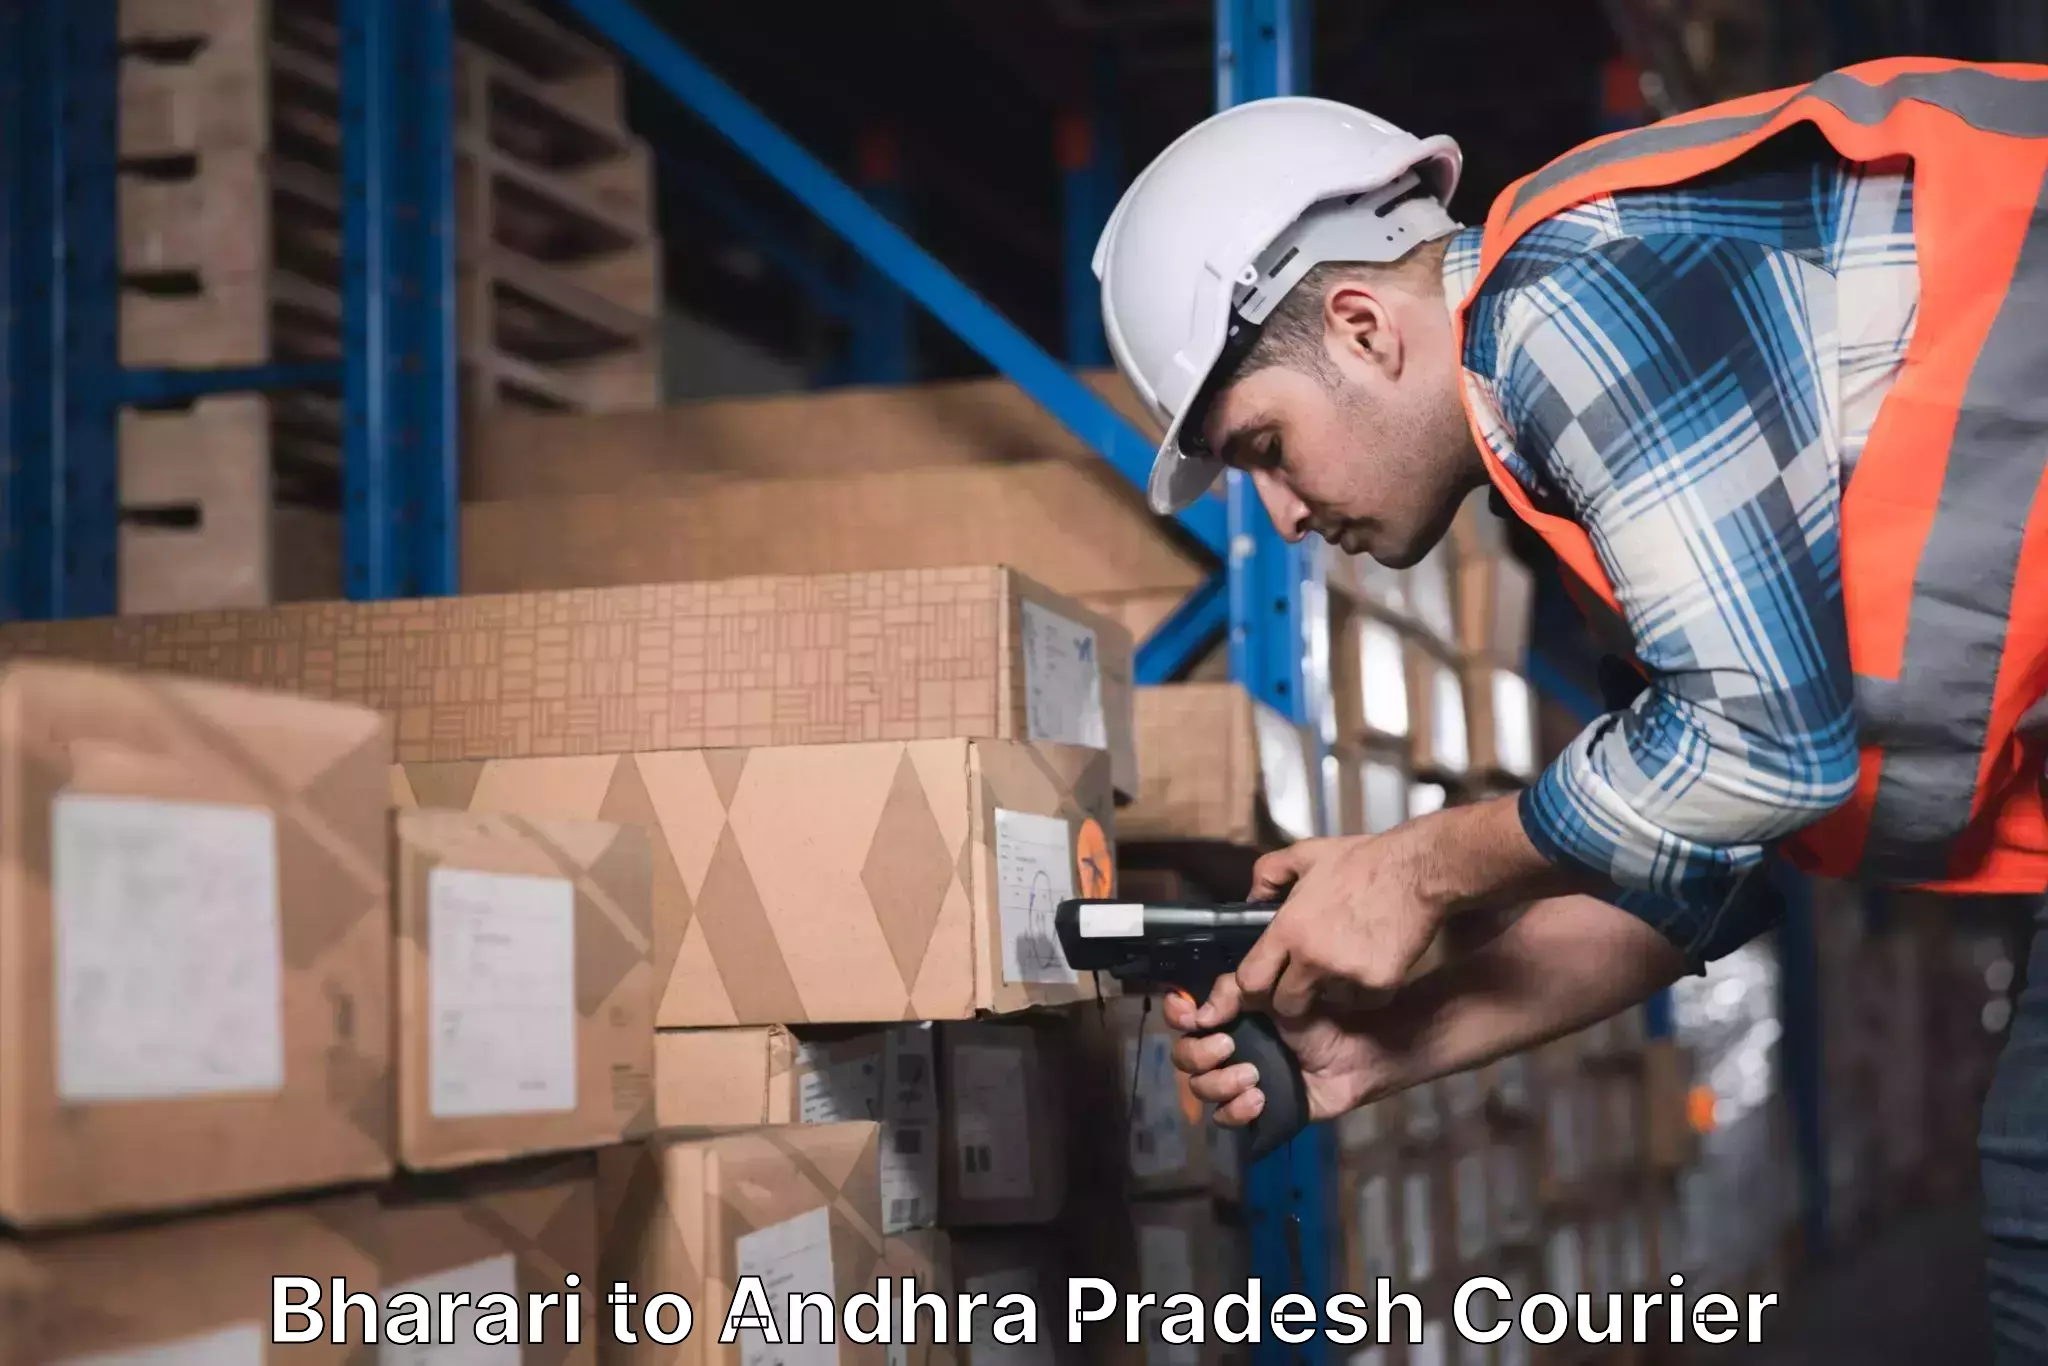 Global logistics network Bharari to Andhra Pradesh